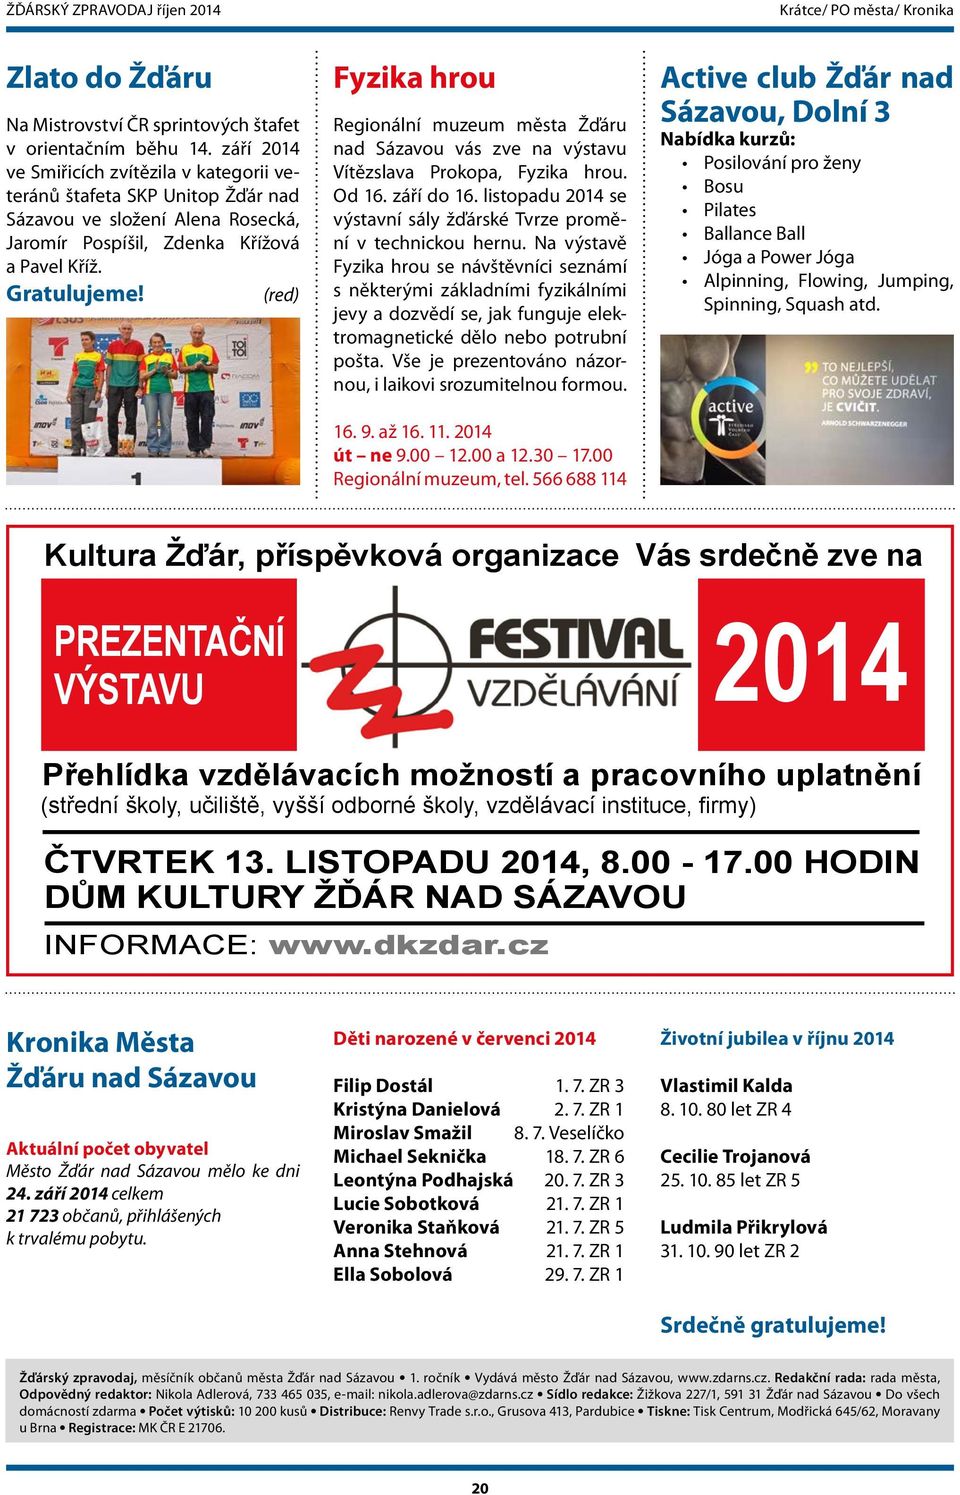 Fyzika hrou Regionální muzeum města Žďáru nad Sázavou vás zve na výstavu Vítězslava Prokopa, Fyzika hrou. Od 16. září do 16. listopadu 2014 se výstavní sály žďárské Tvrze promění v technickou hernu.